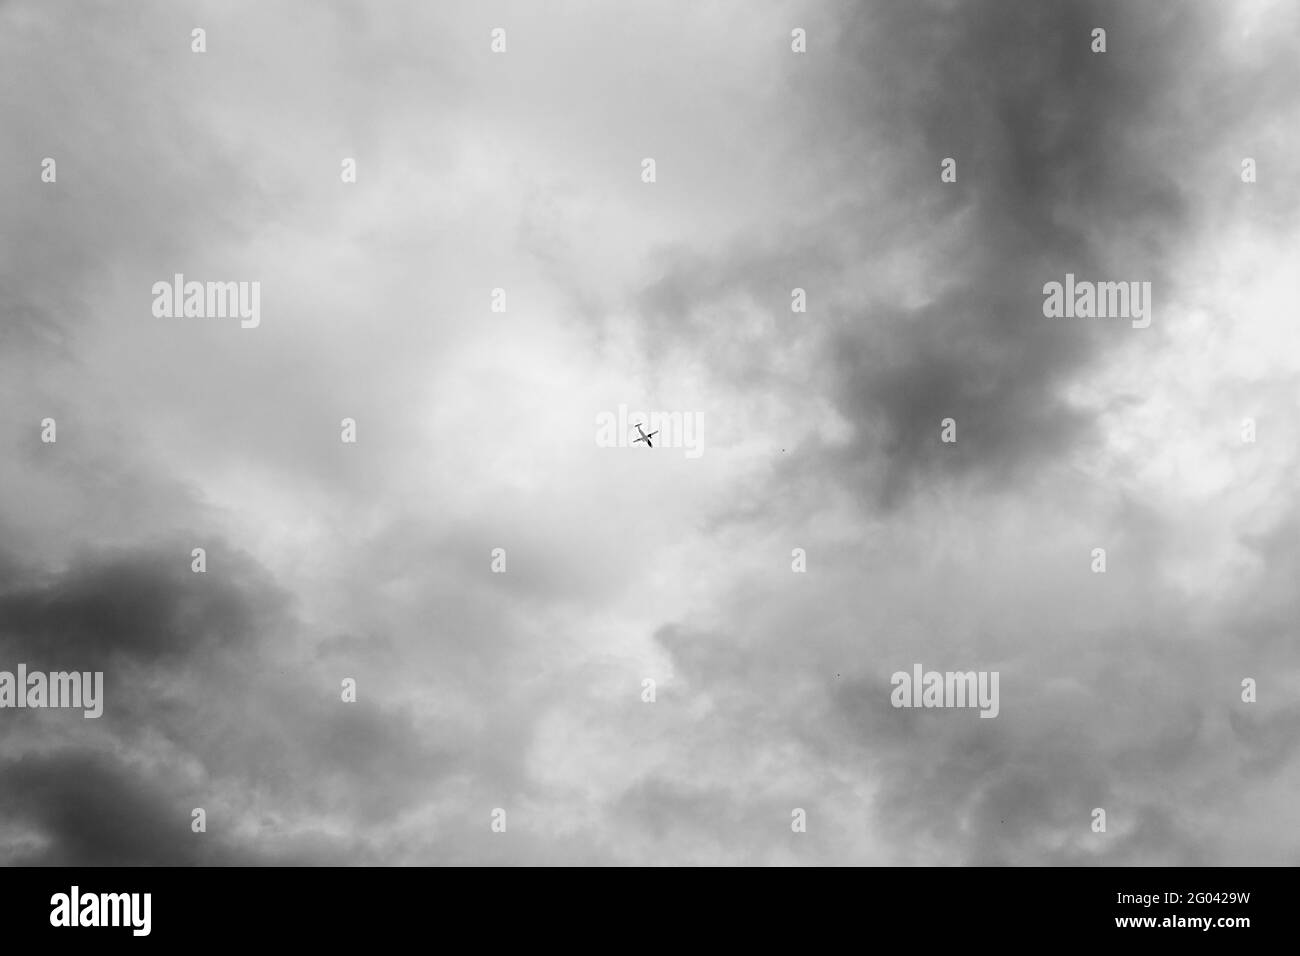 Schwarz-Weiß-Foto, Ansicht von unten eines Passagierflugzeugs, das an einem strahlend blauen Himmel abfliegt oder landet. Luft- und Raumfahrtindustrie oder Tourismusindustrie. Stockfoto